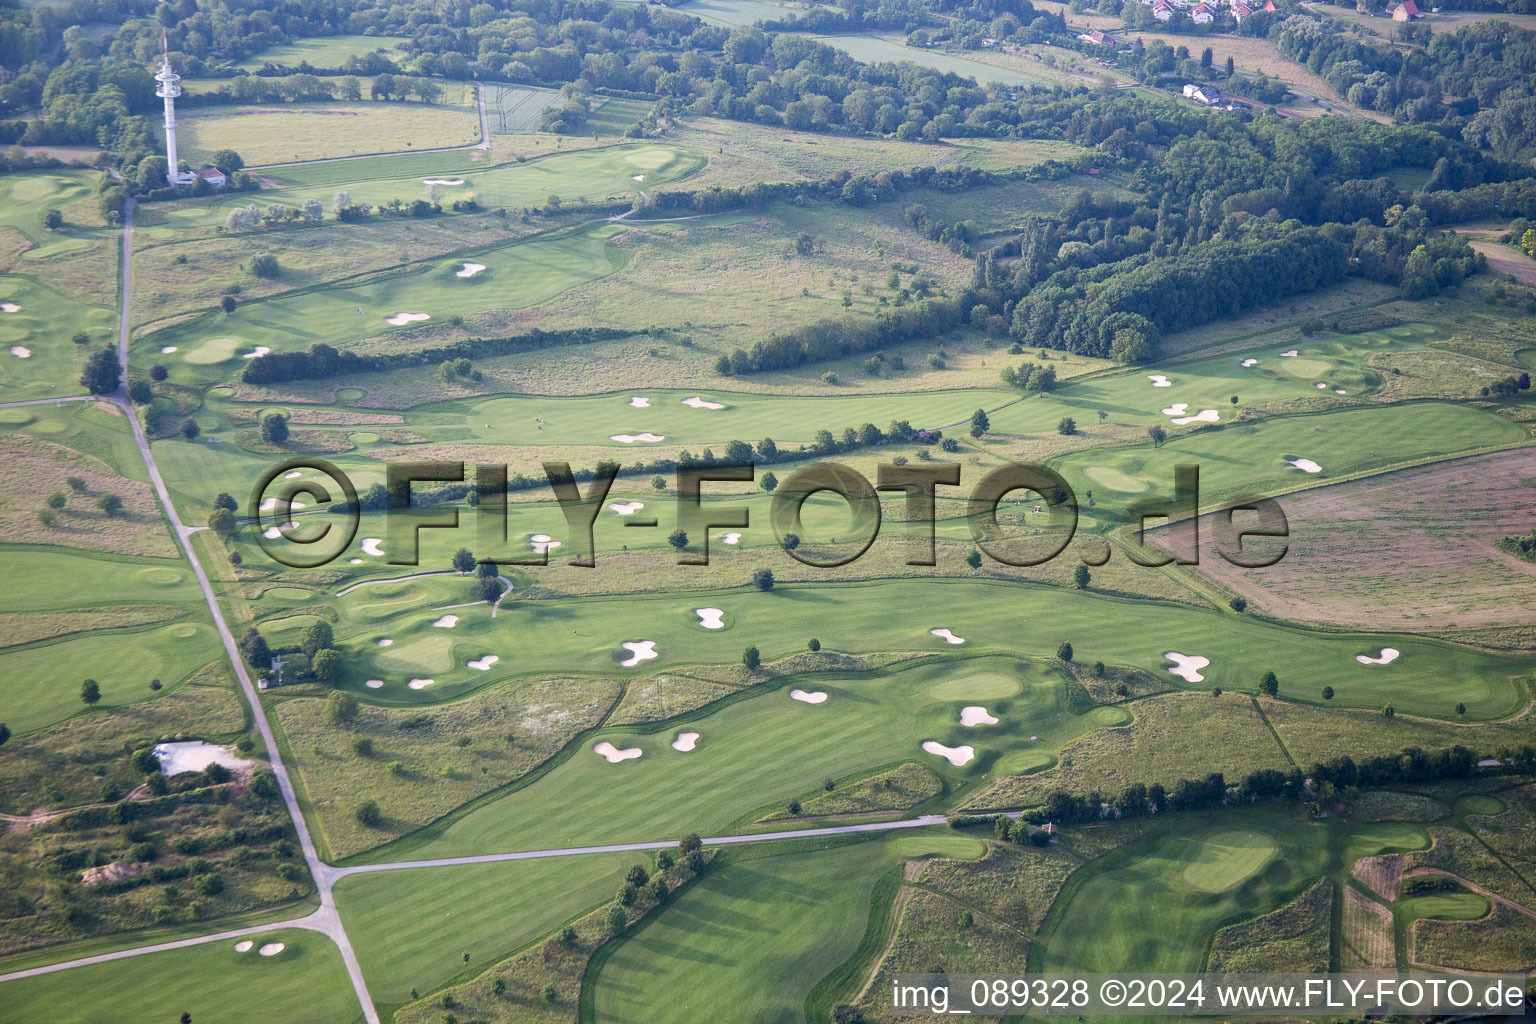 Vue oblique de Terrain du Golfclub Bruchsa à Bruchsal dans le département Bade-Wurtemberg, Allemagne